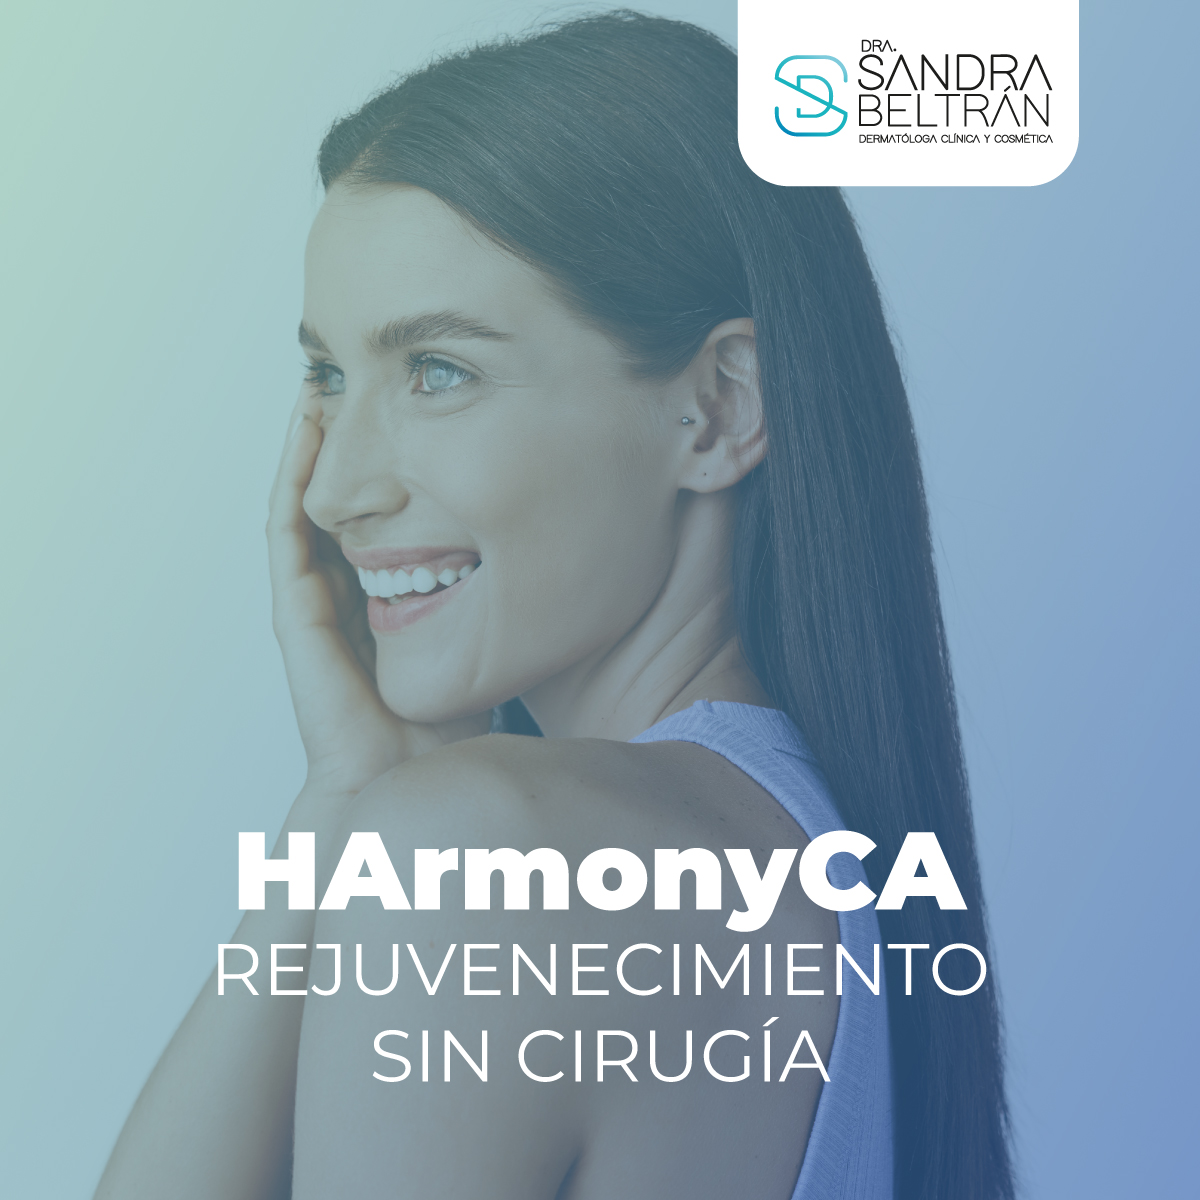 HarmonyCA: Rejuvenecimiento sin Cirugía